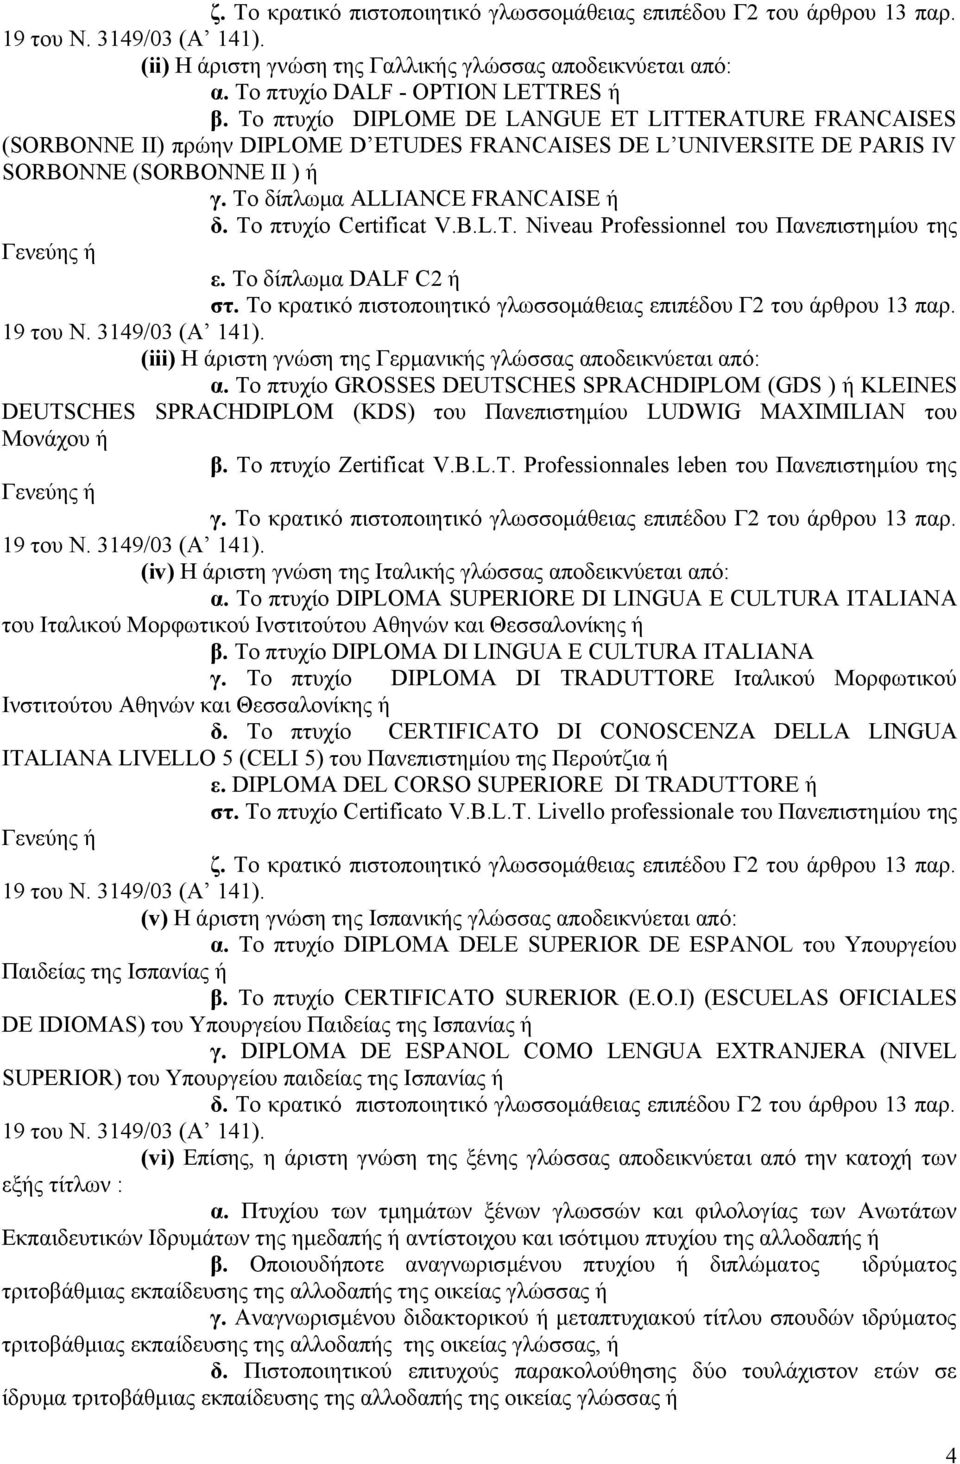 Το πτυχίο Certificat V.B.L.T. Niveau Professionnel του Πανεπιστημίου της ε. Το δίπλωμα DALF C2 ή στ. Το κρατικό πιστοποιητικό γλωσσομάθειας επιπέδου Γ2 του άρθρου 13 παρ.